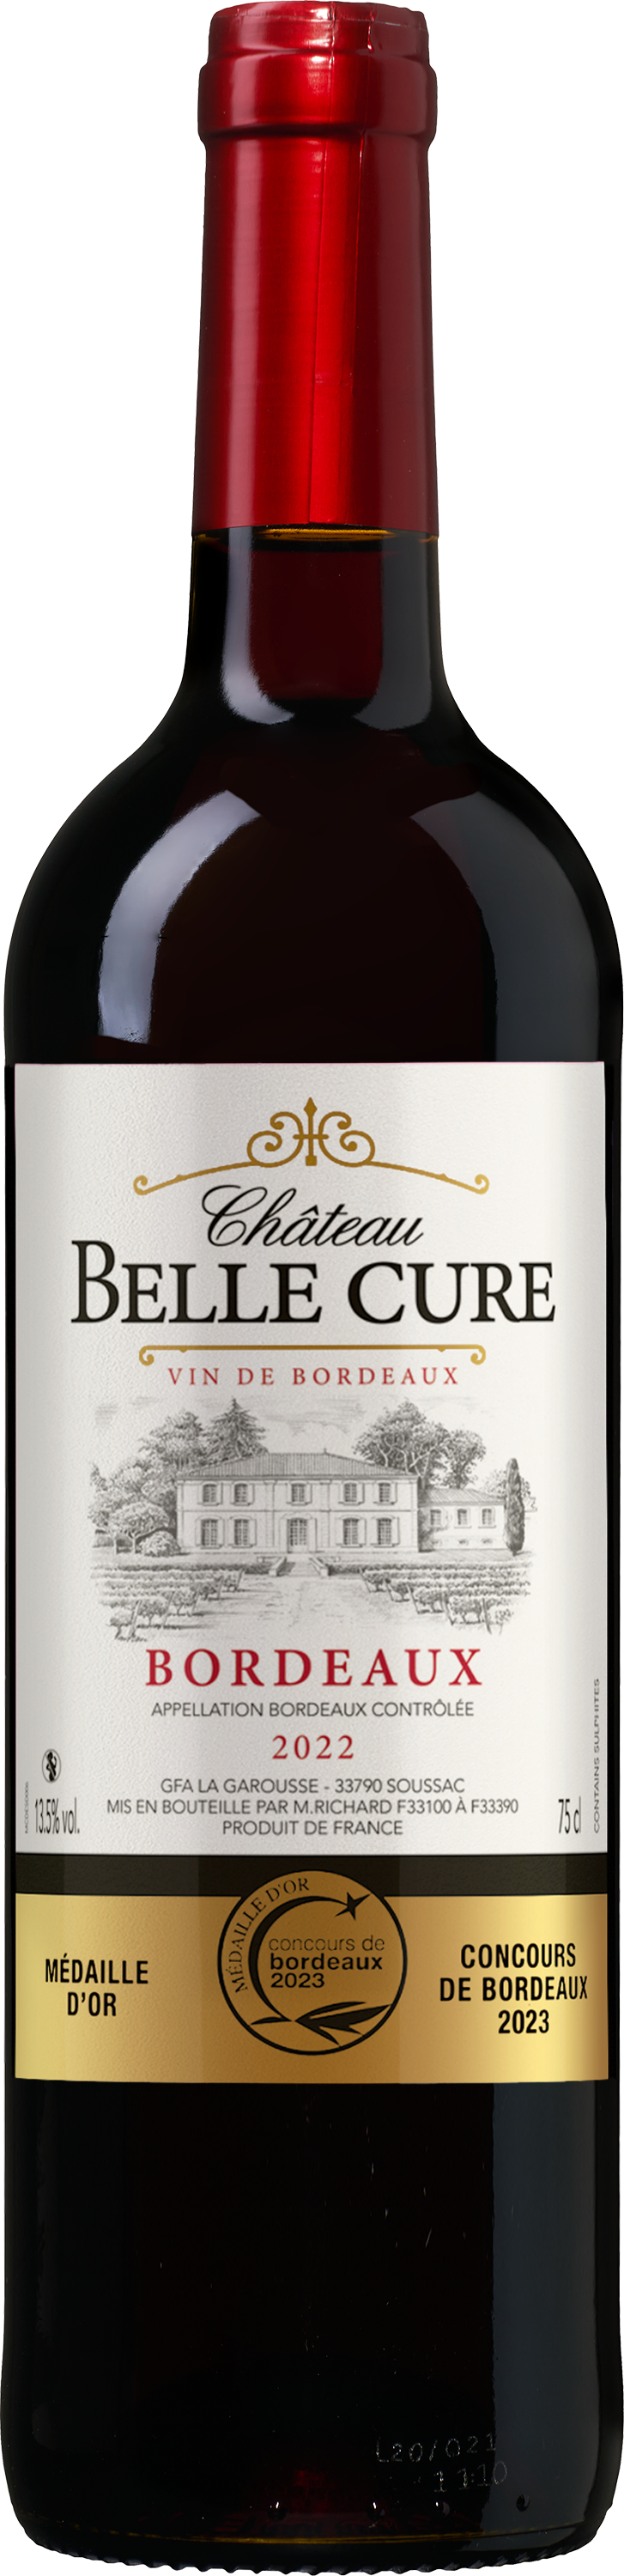 Wijnbeurs Château Belle Cure Bordeaux